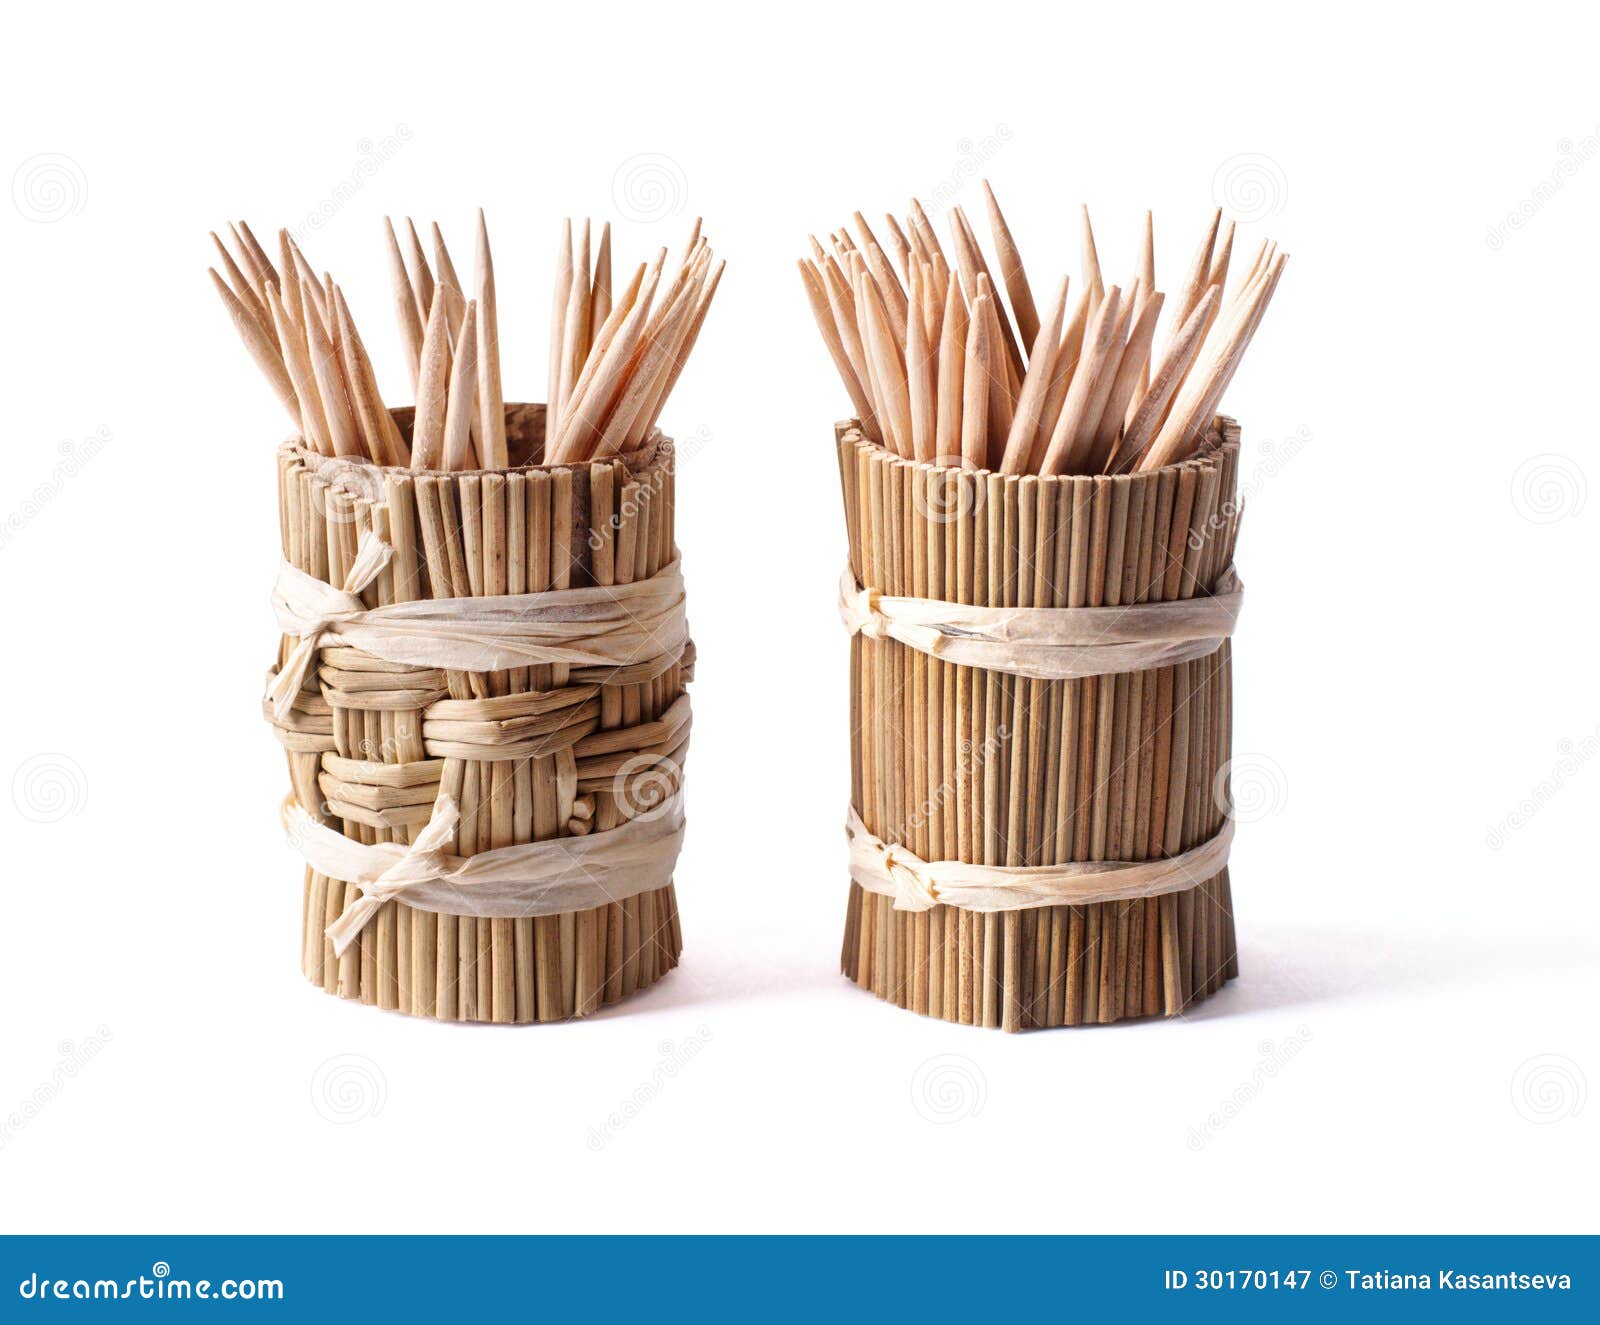 Runder Bambuskasten mit Toothpicks auf weißem Hintergrund, Ausschnittsweg eingeschlossen.